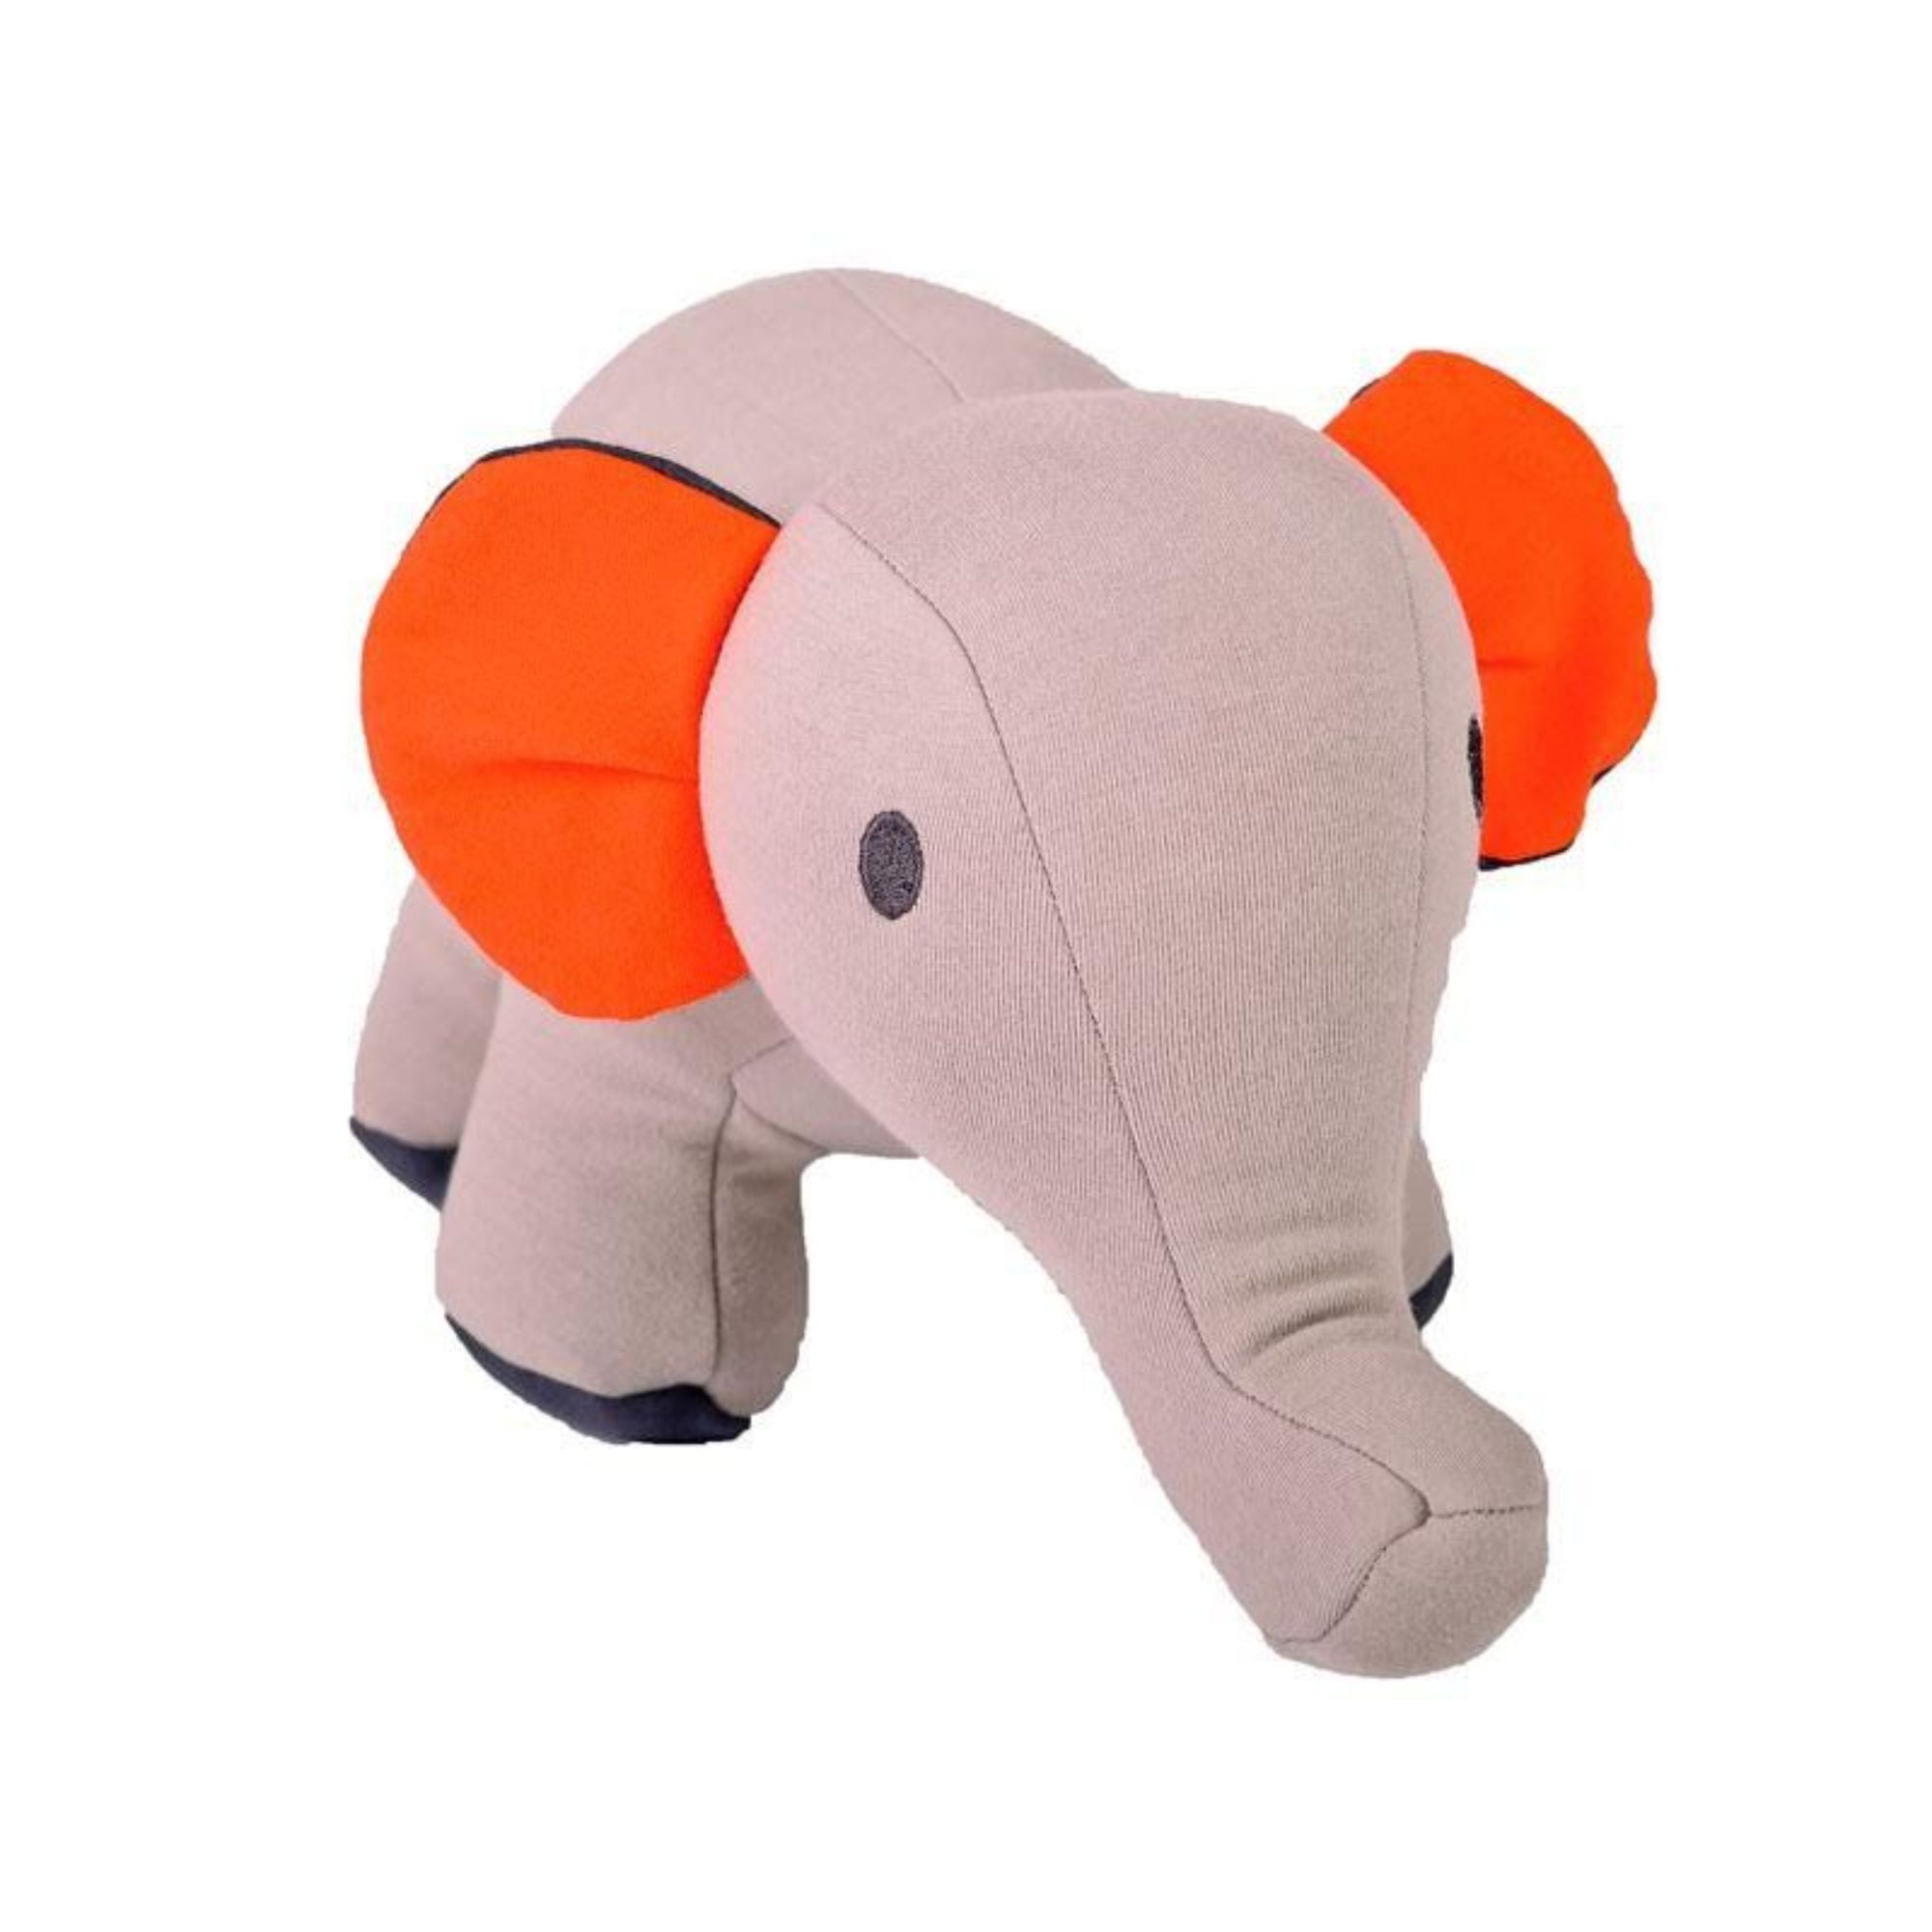 Orange elephant